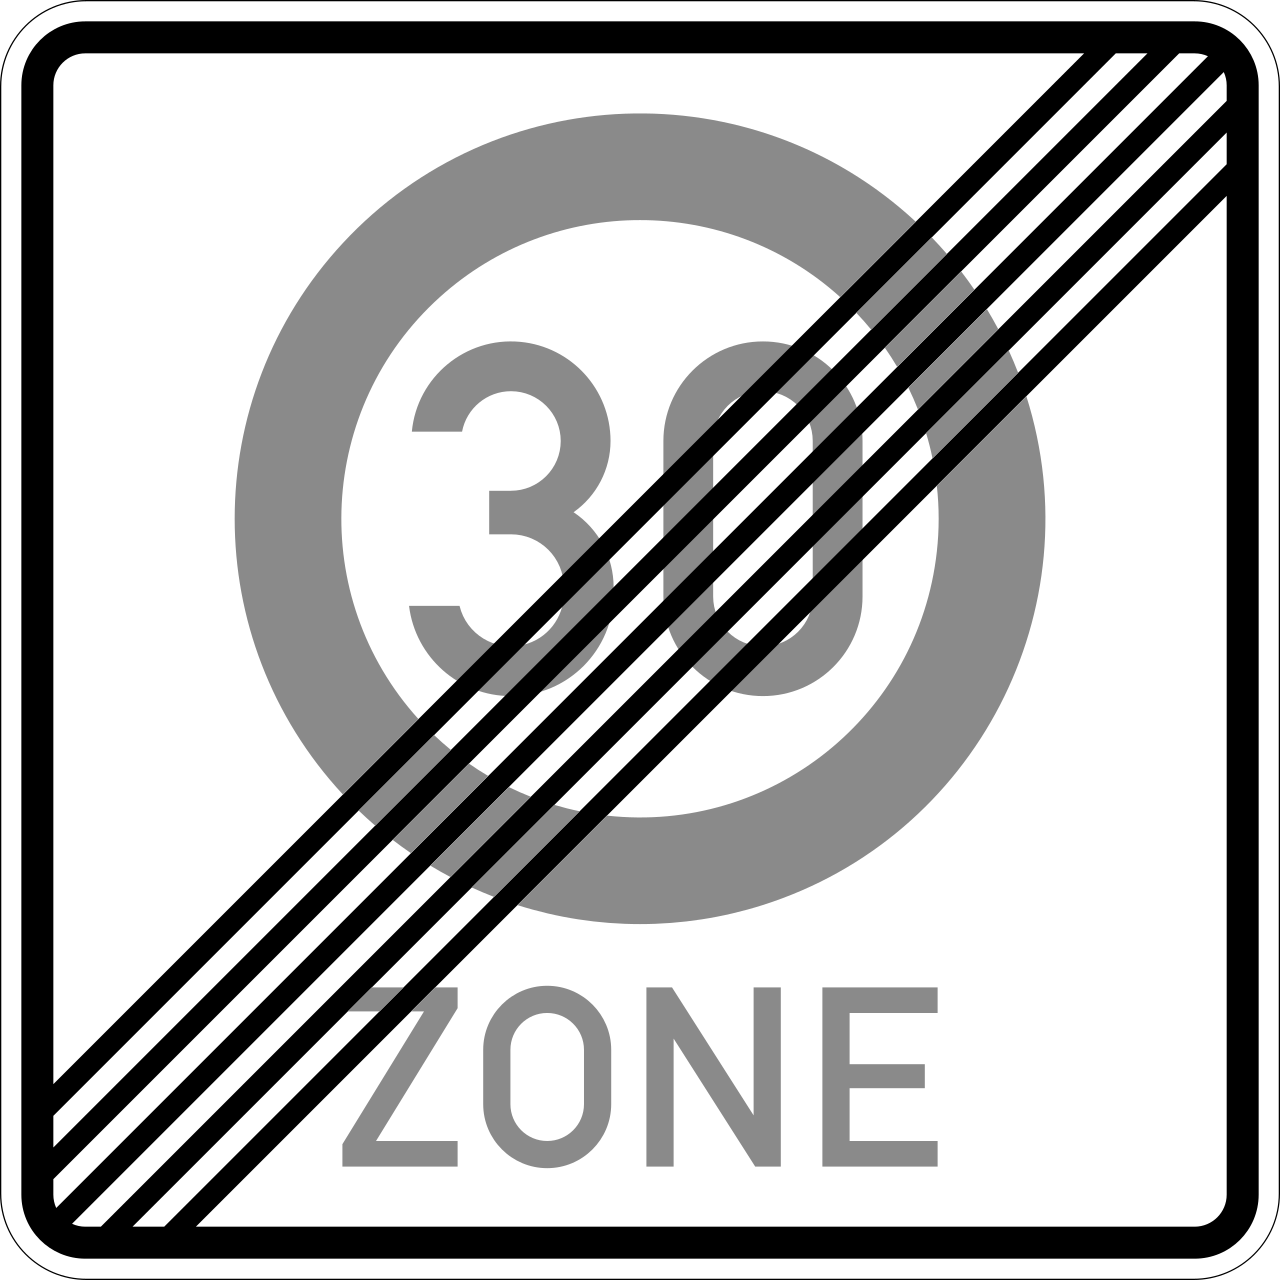 Ende einer Tempo 30-Zone (VzKat 274.2)